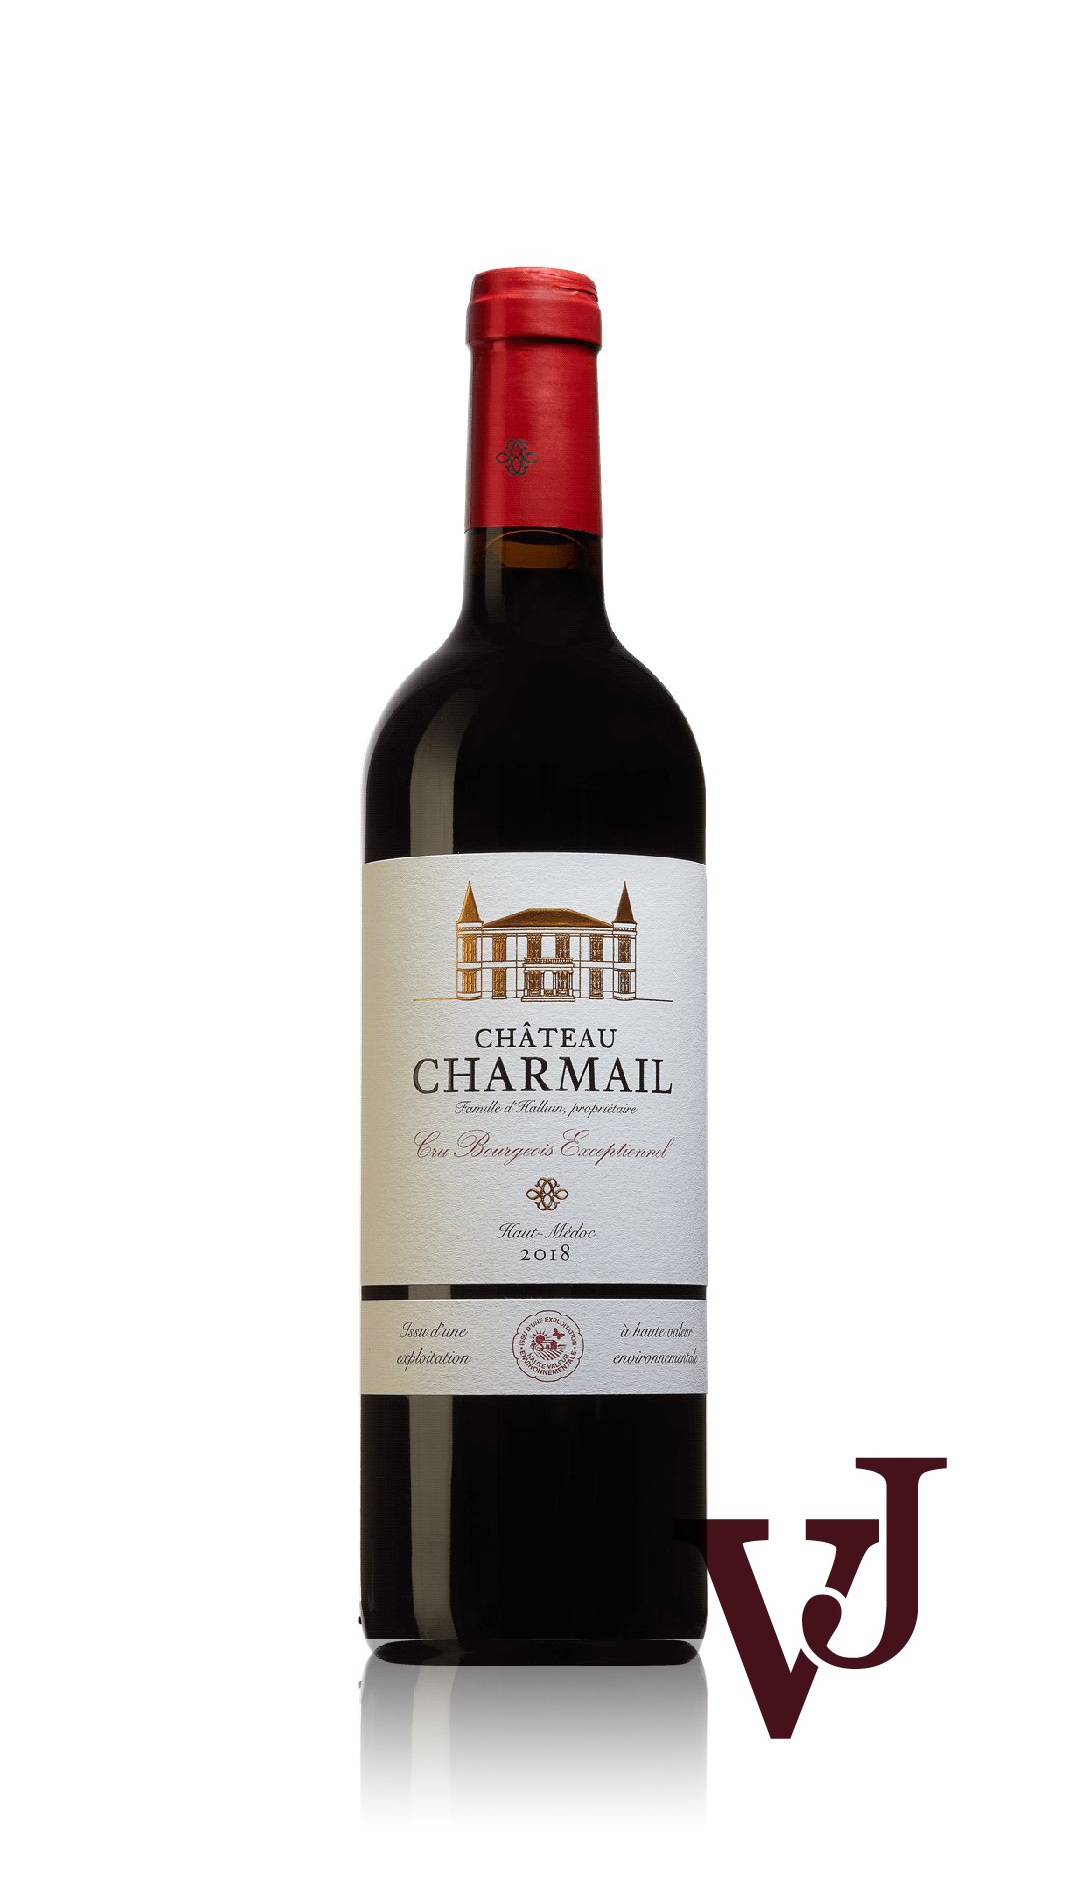 Rött Vin - Château Charmail artikel nummer 284301 från producenten Bordeauxslott från området Frankrike